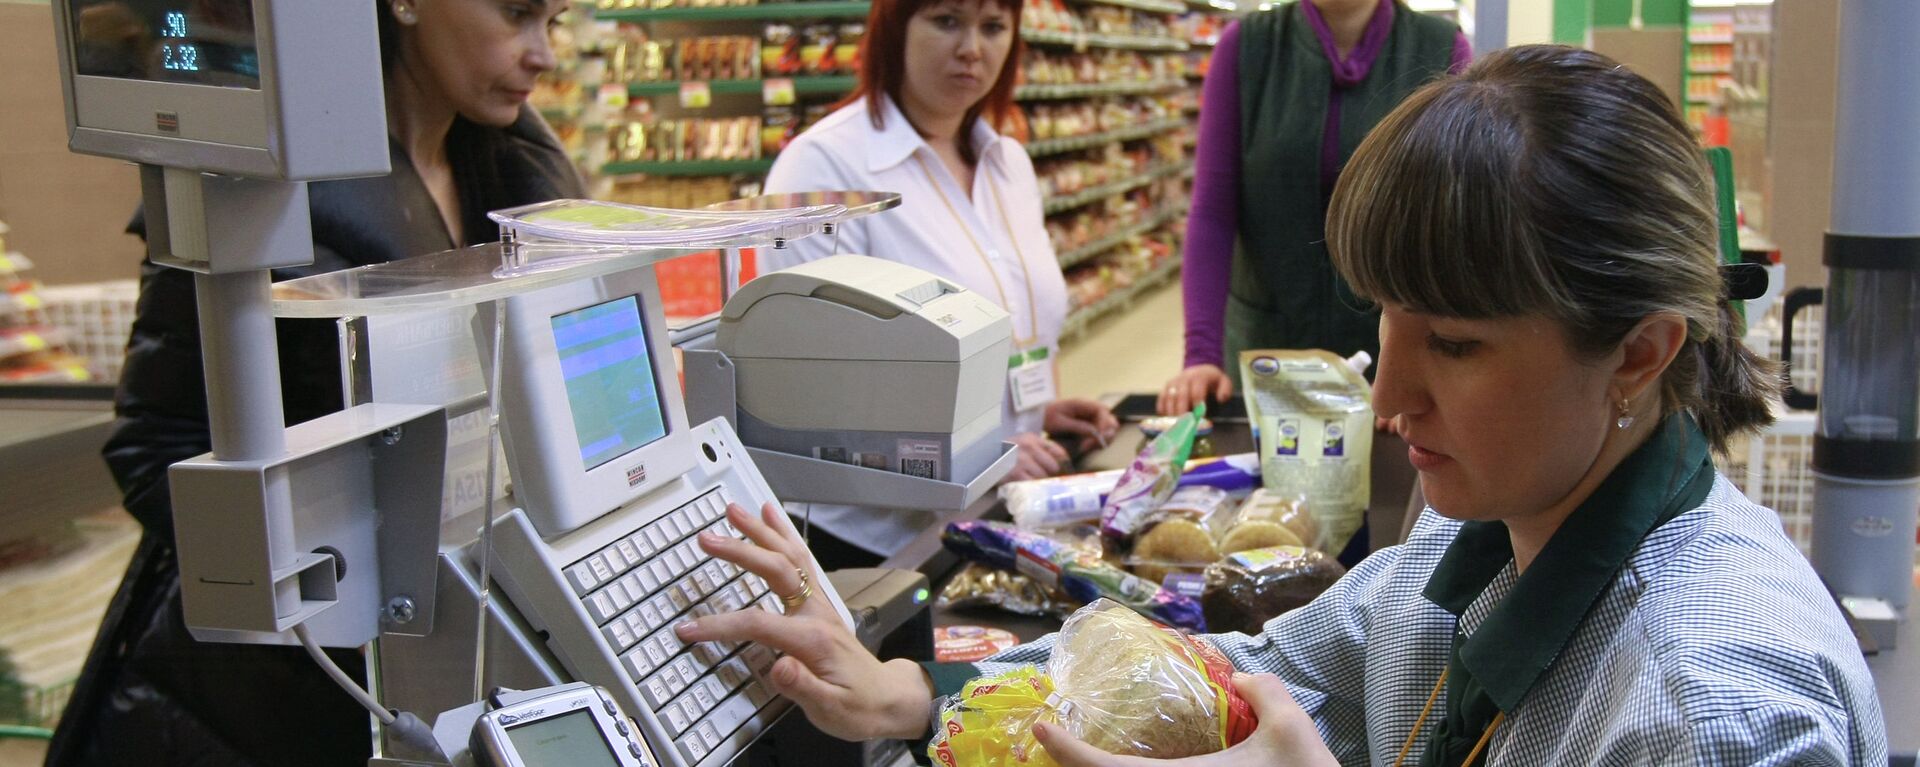 Покупатели оплачивают покупки в гипермаркете - Sputnik Латвия, 1920, 21.10.2021